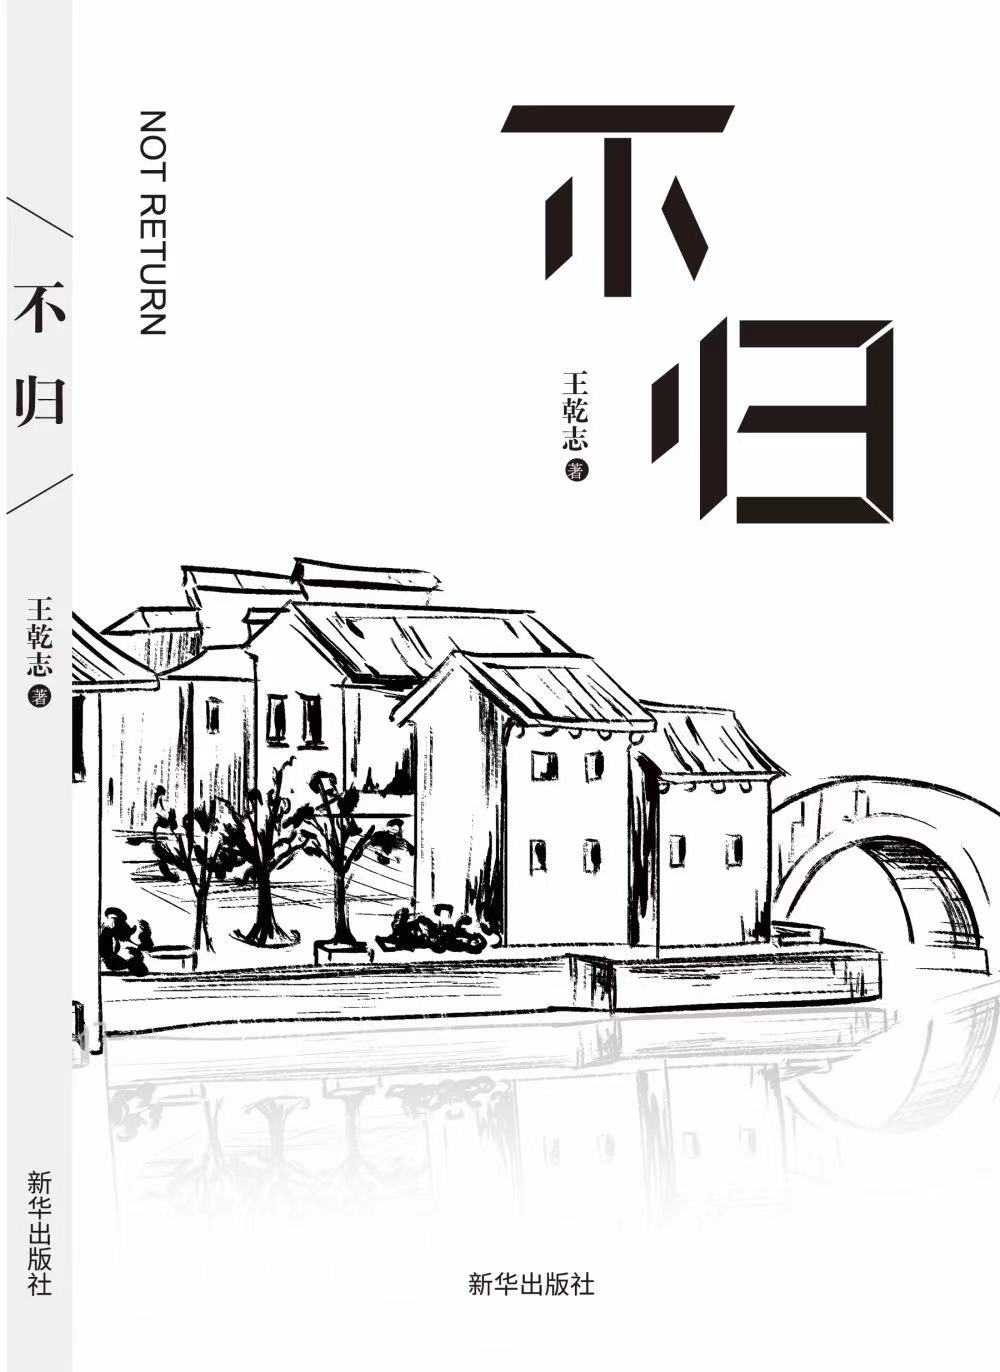 青年作家王乾志新作《不归》正式出版发行